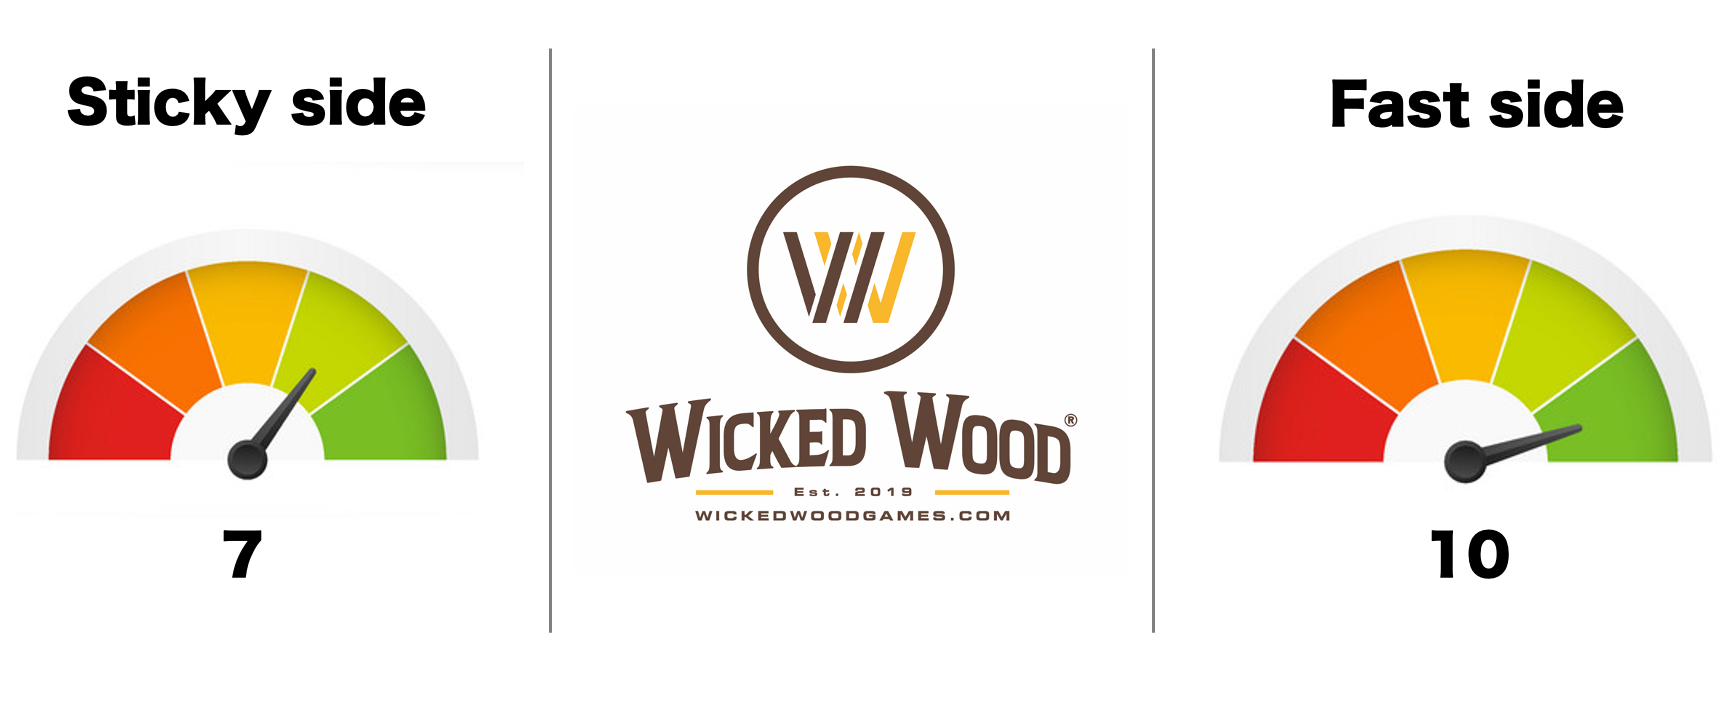 Wicked Wood Pro Tasker - GameChanger 1x4 Cornhole Tasker - Wicked Wood Games